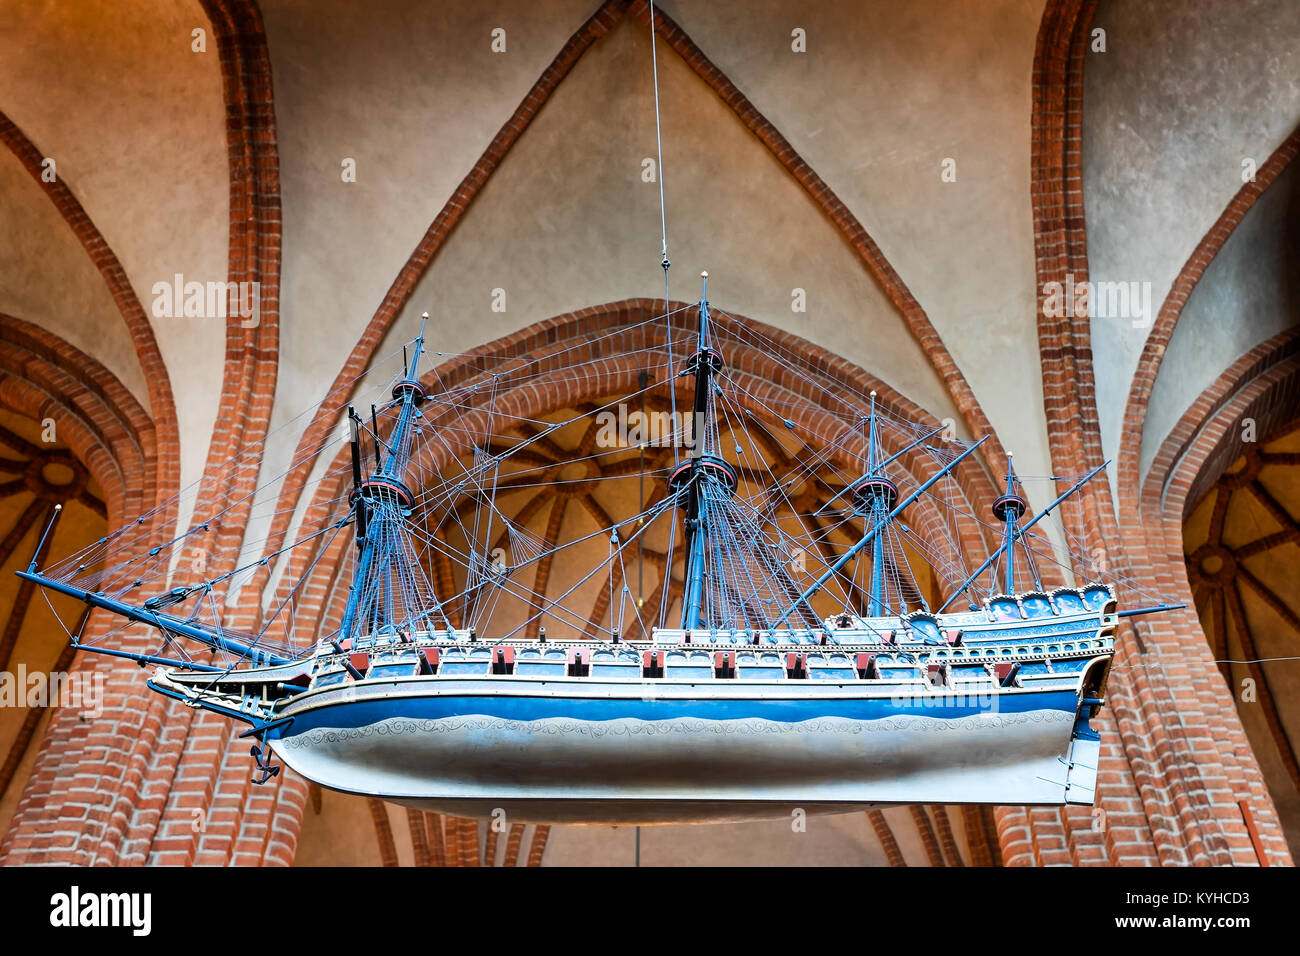 Stoccolma Cattedrale Storkyrkan nave votiva appesa sospesi dal soffitto alto, una tradizione nelle Chiese scandinave. Close up dettaglio. Guardando verso l'alto. Foto Stock